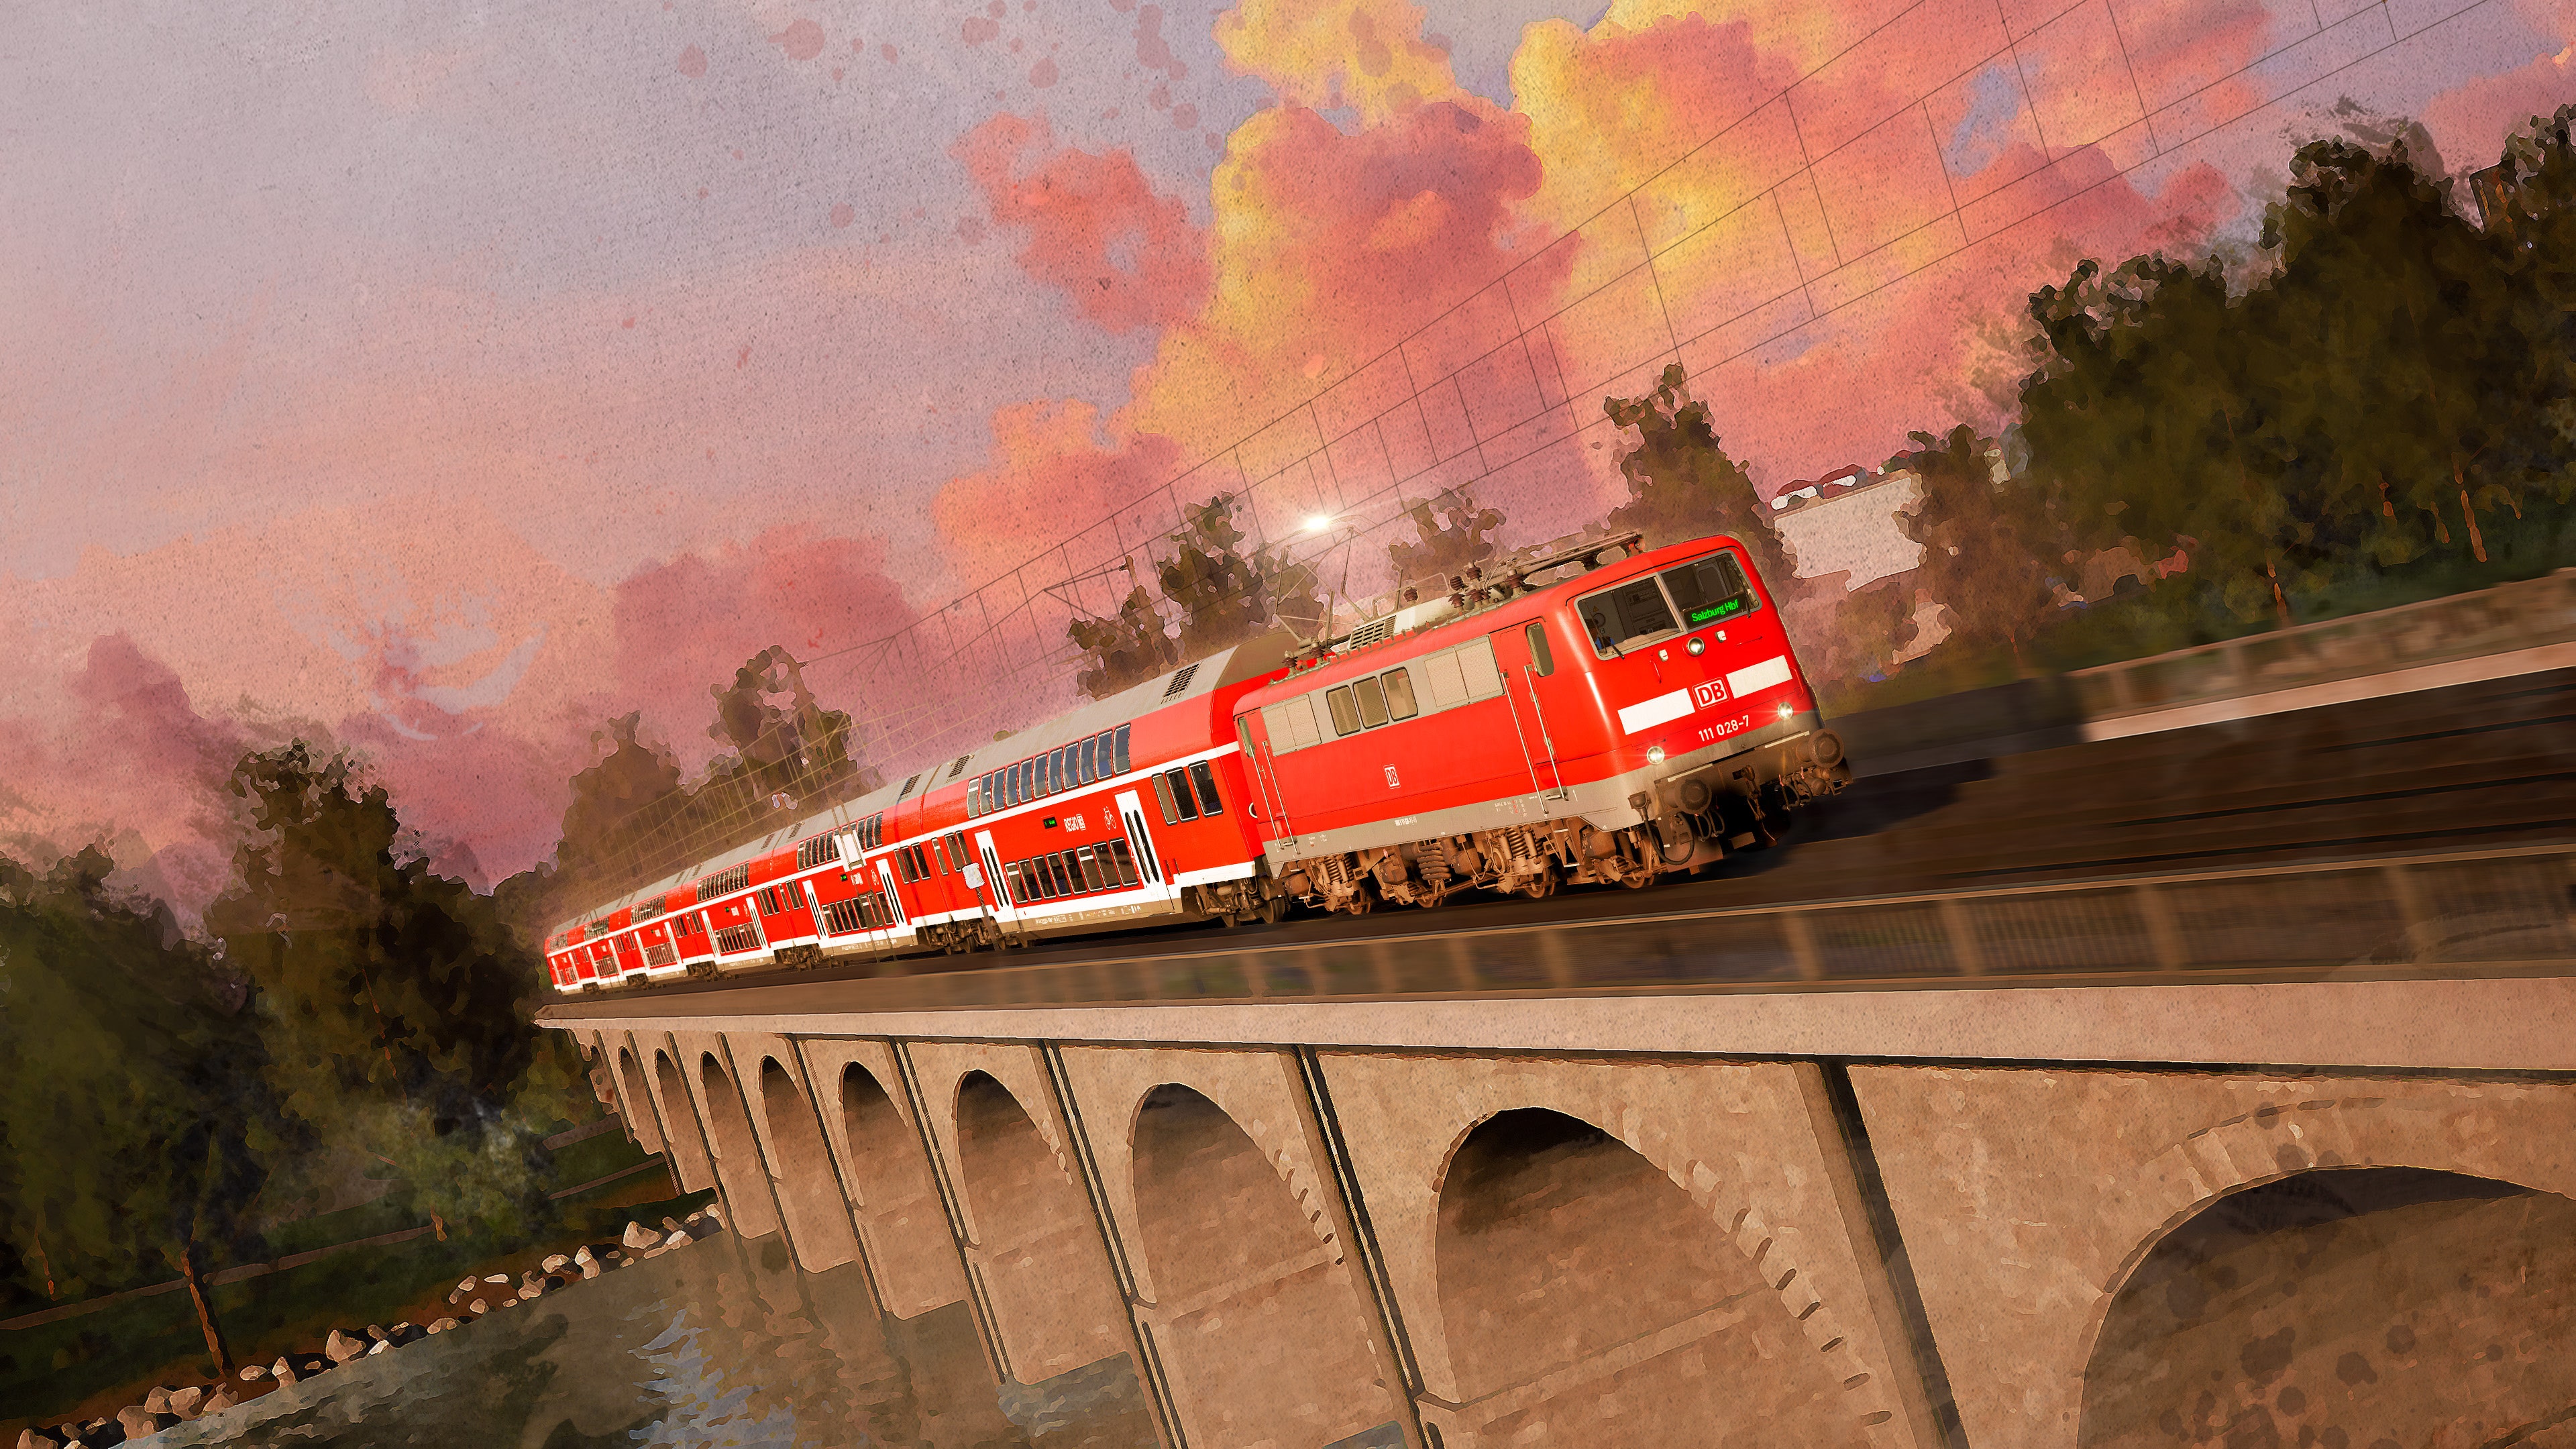 Train Sim World® 4: Bahnstrecke Salzburg - Rosenheim Route Add-On